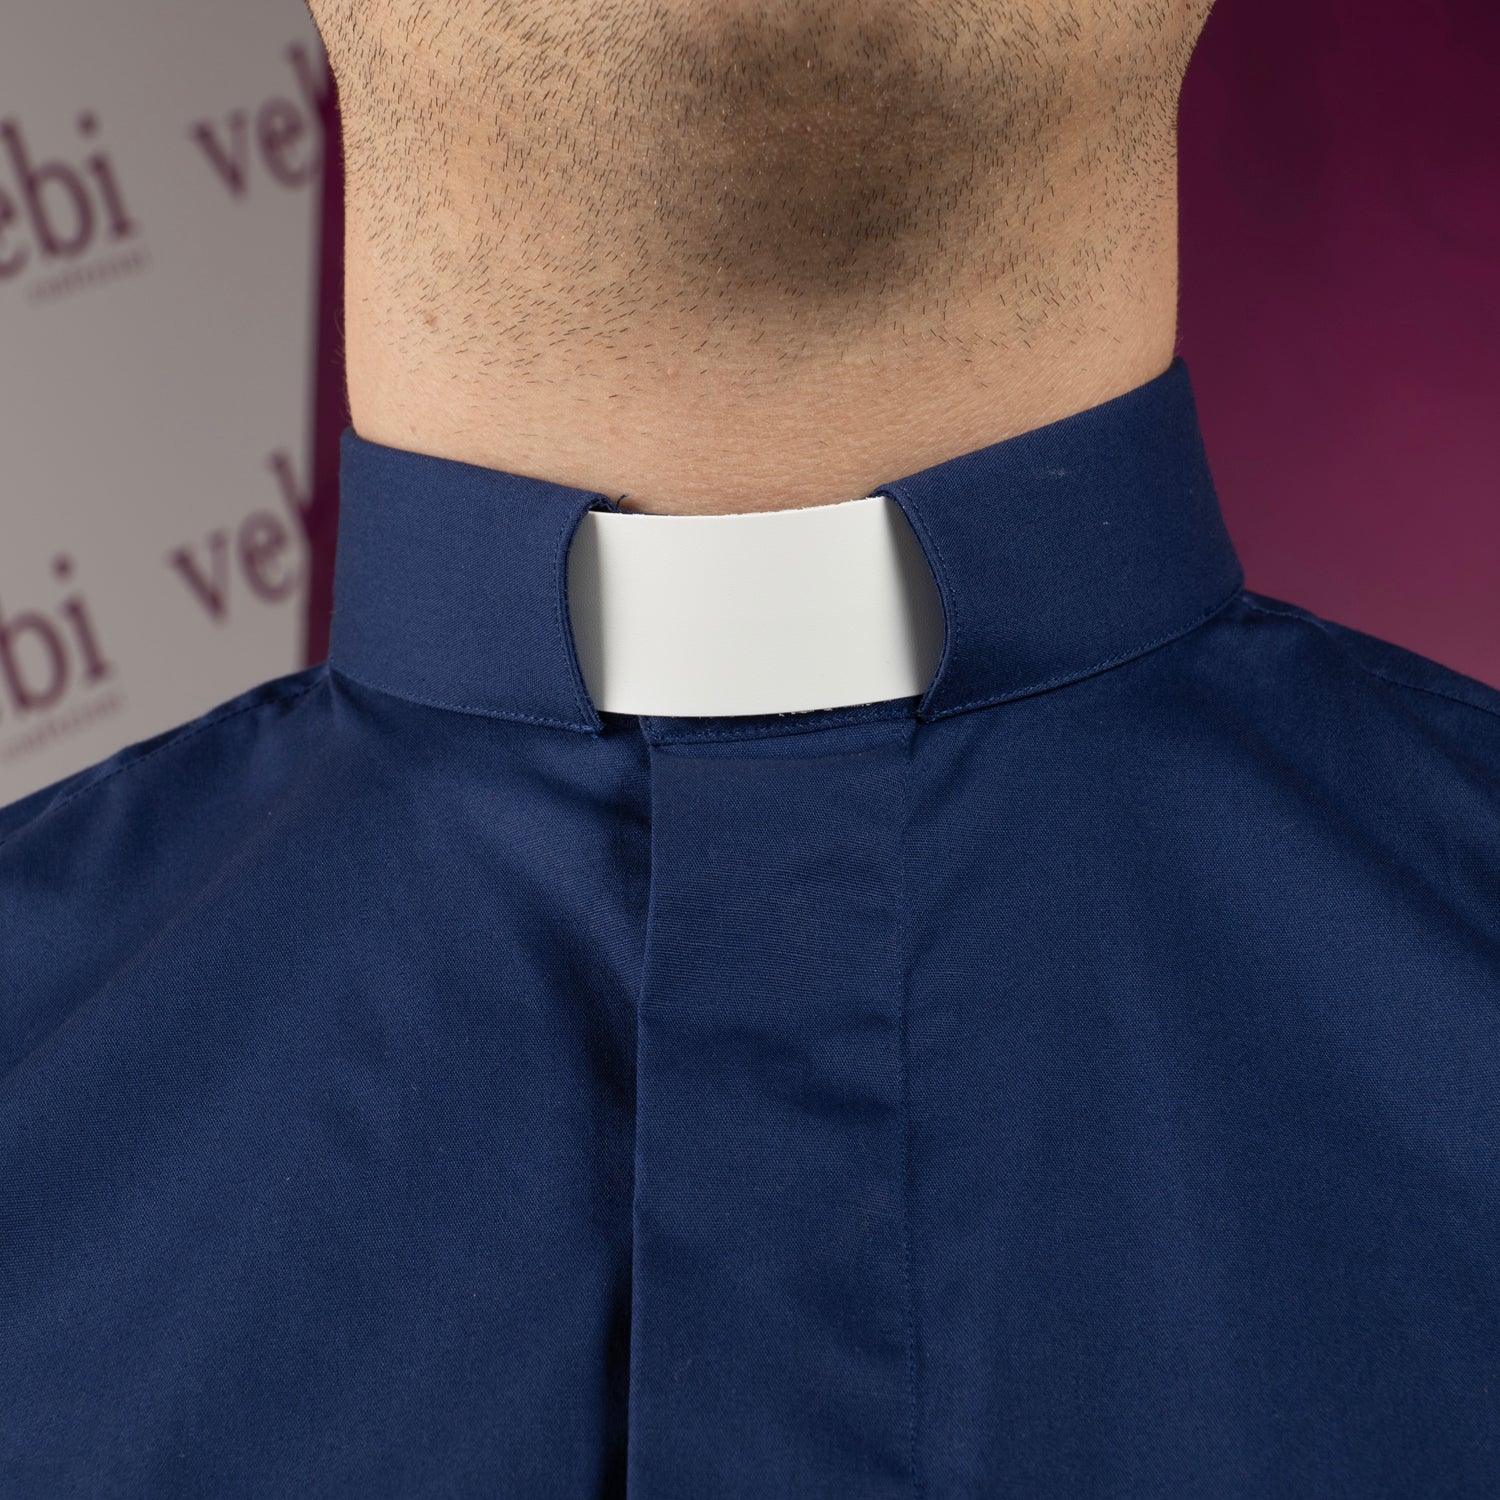 Camicia da Sacerdote Collo Clergy Disponibile in 5 Colori Cotone 100%